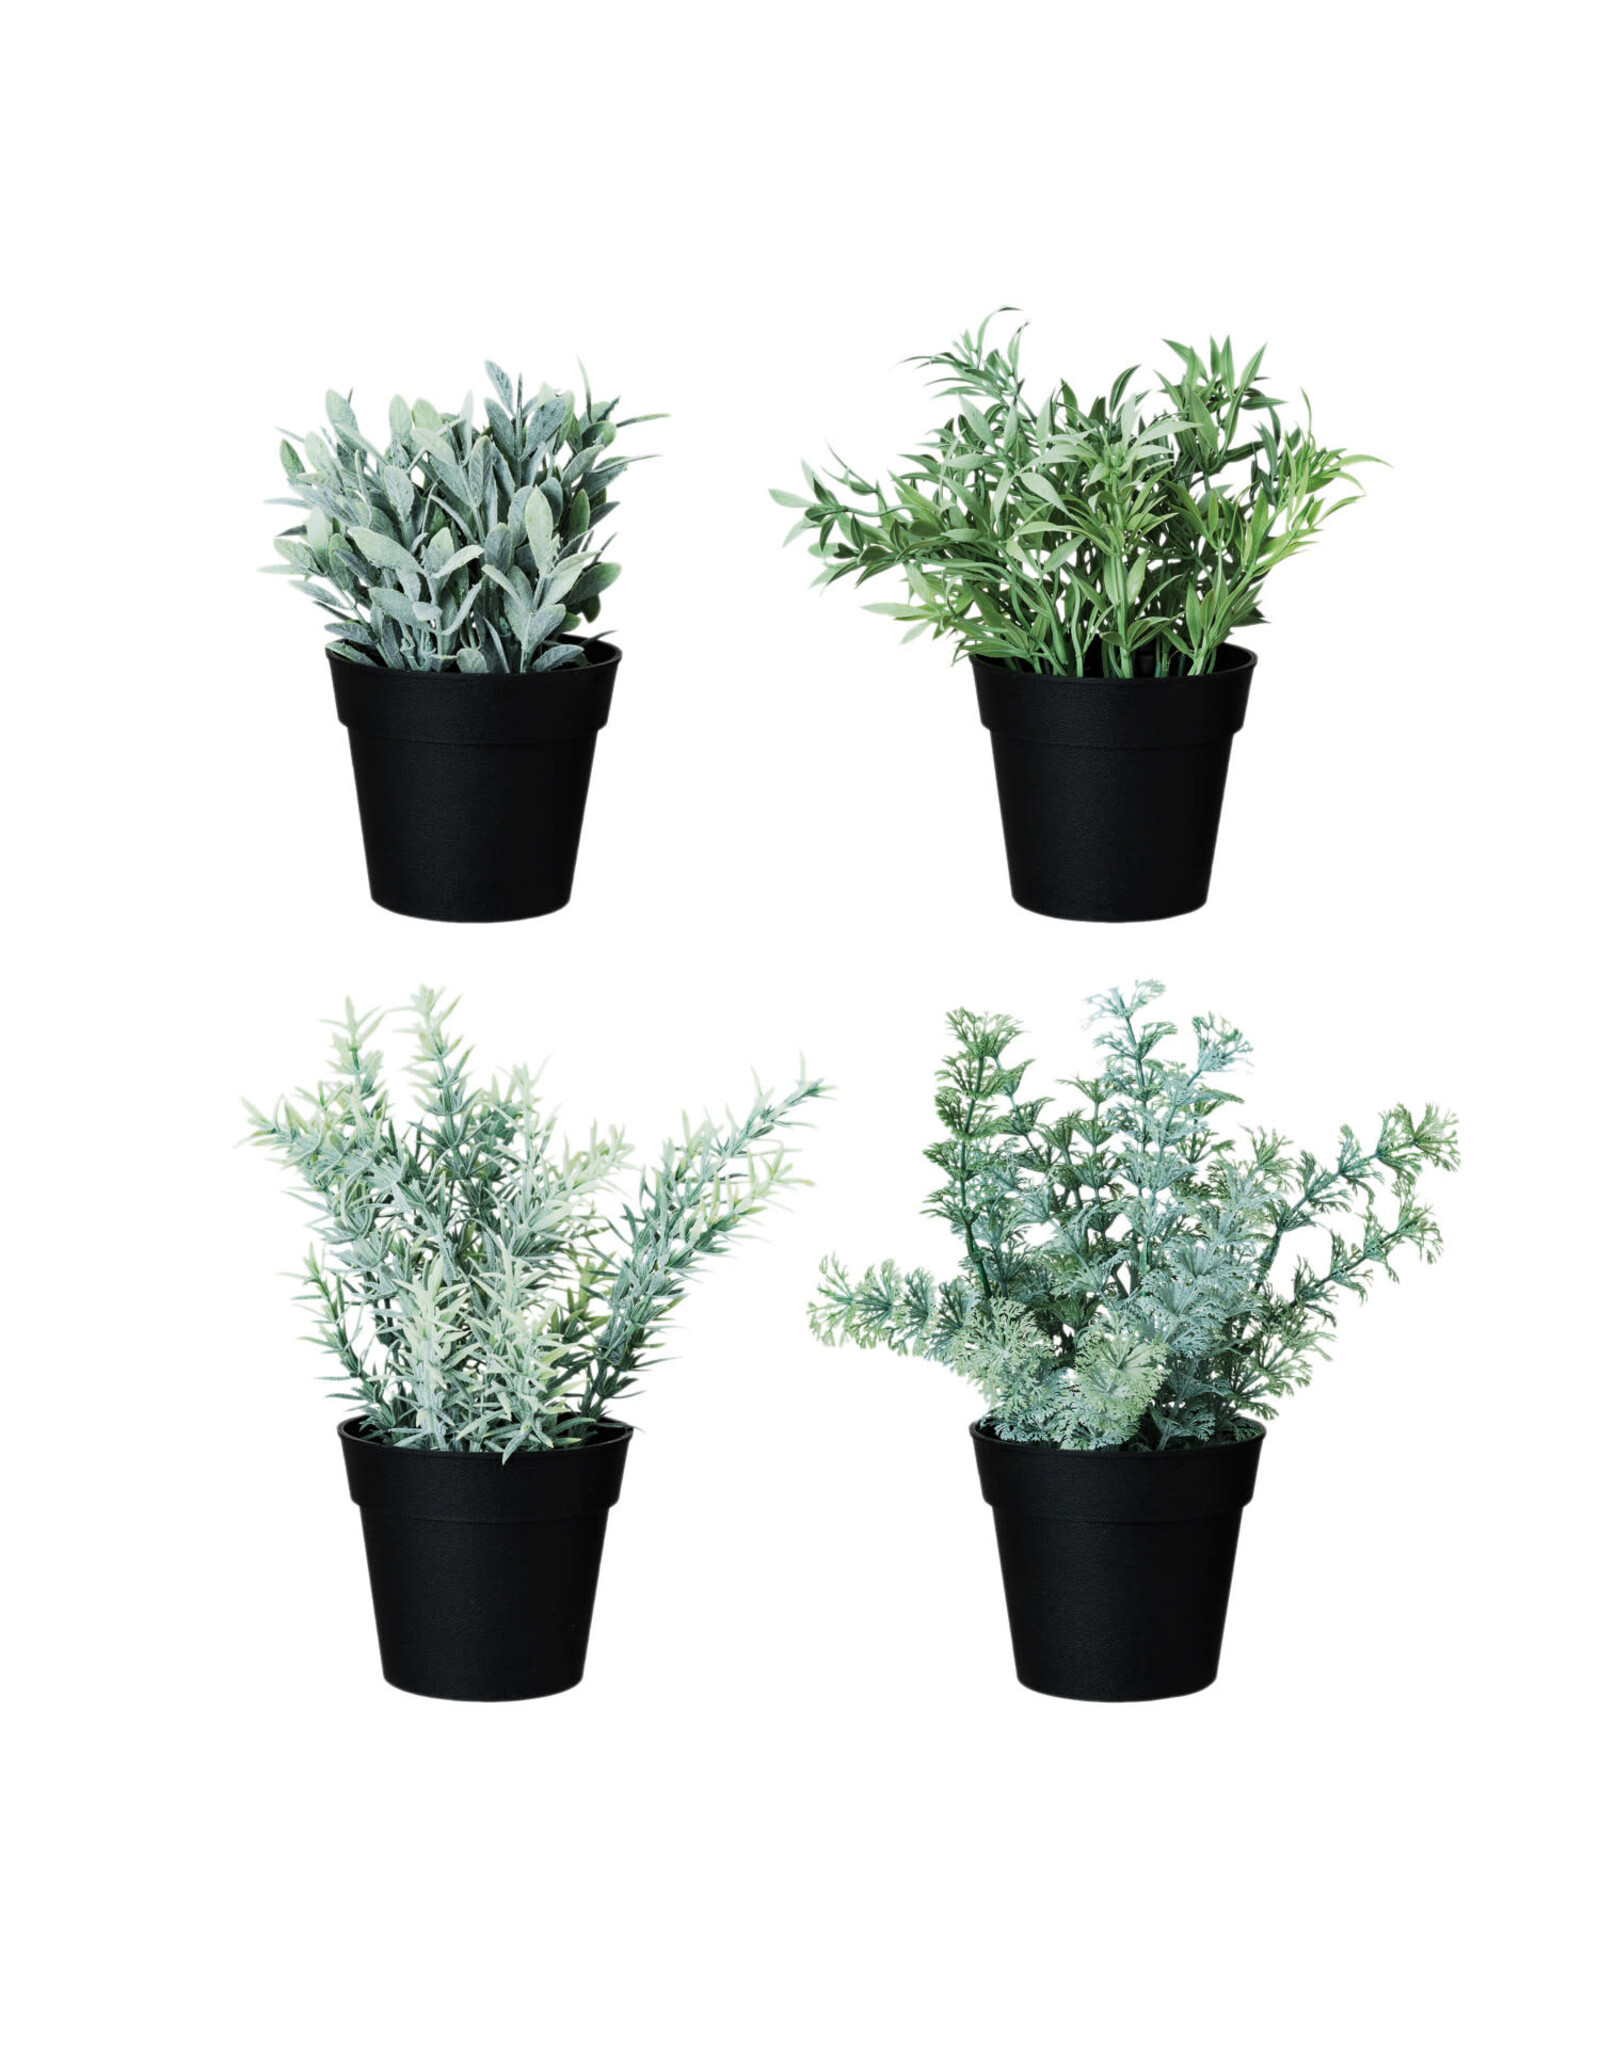 Faux Herbs in Plastic Pots, 4 Styles Each DF8424A